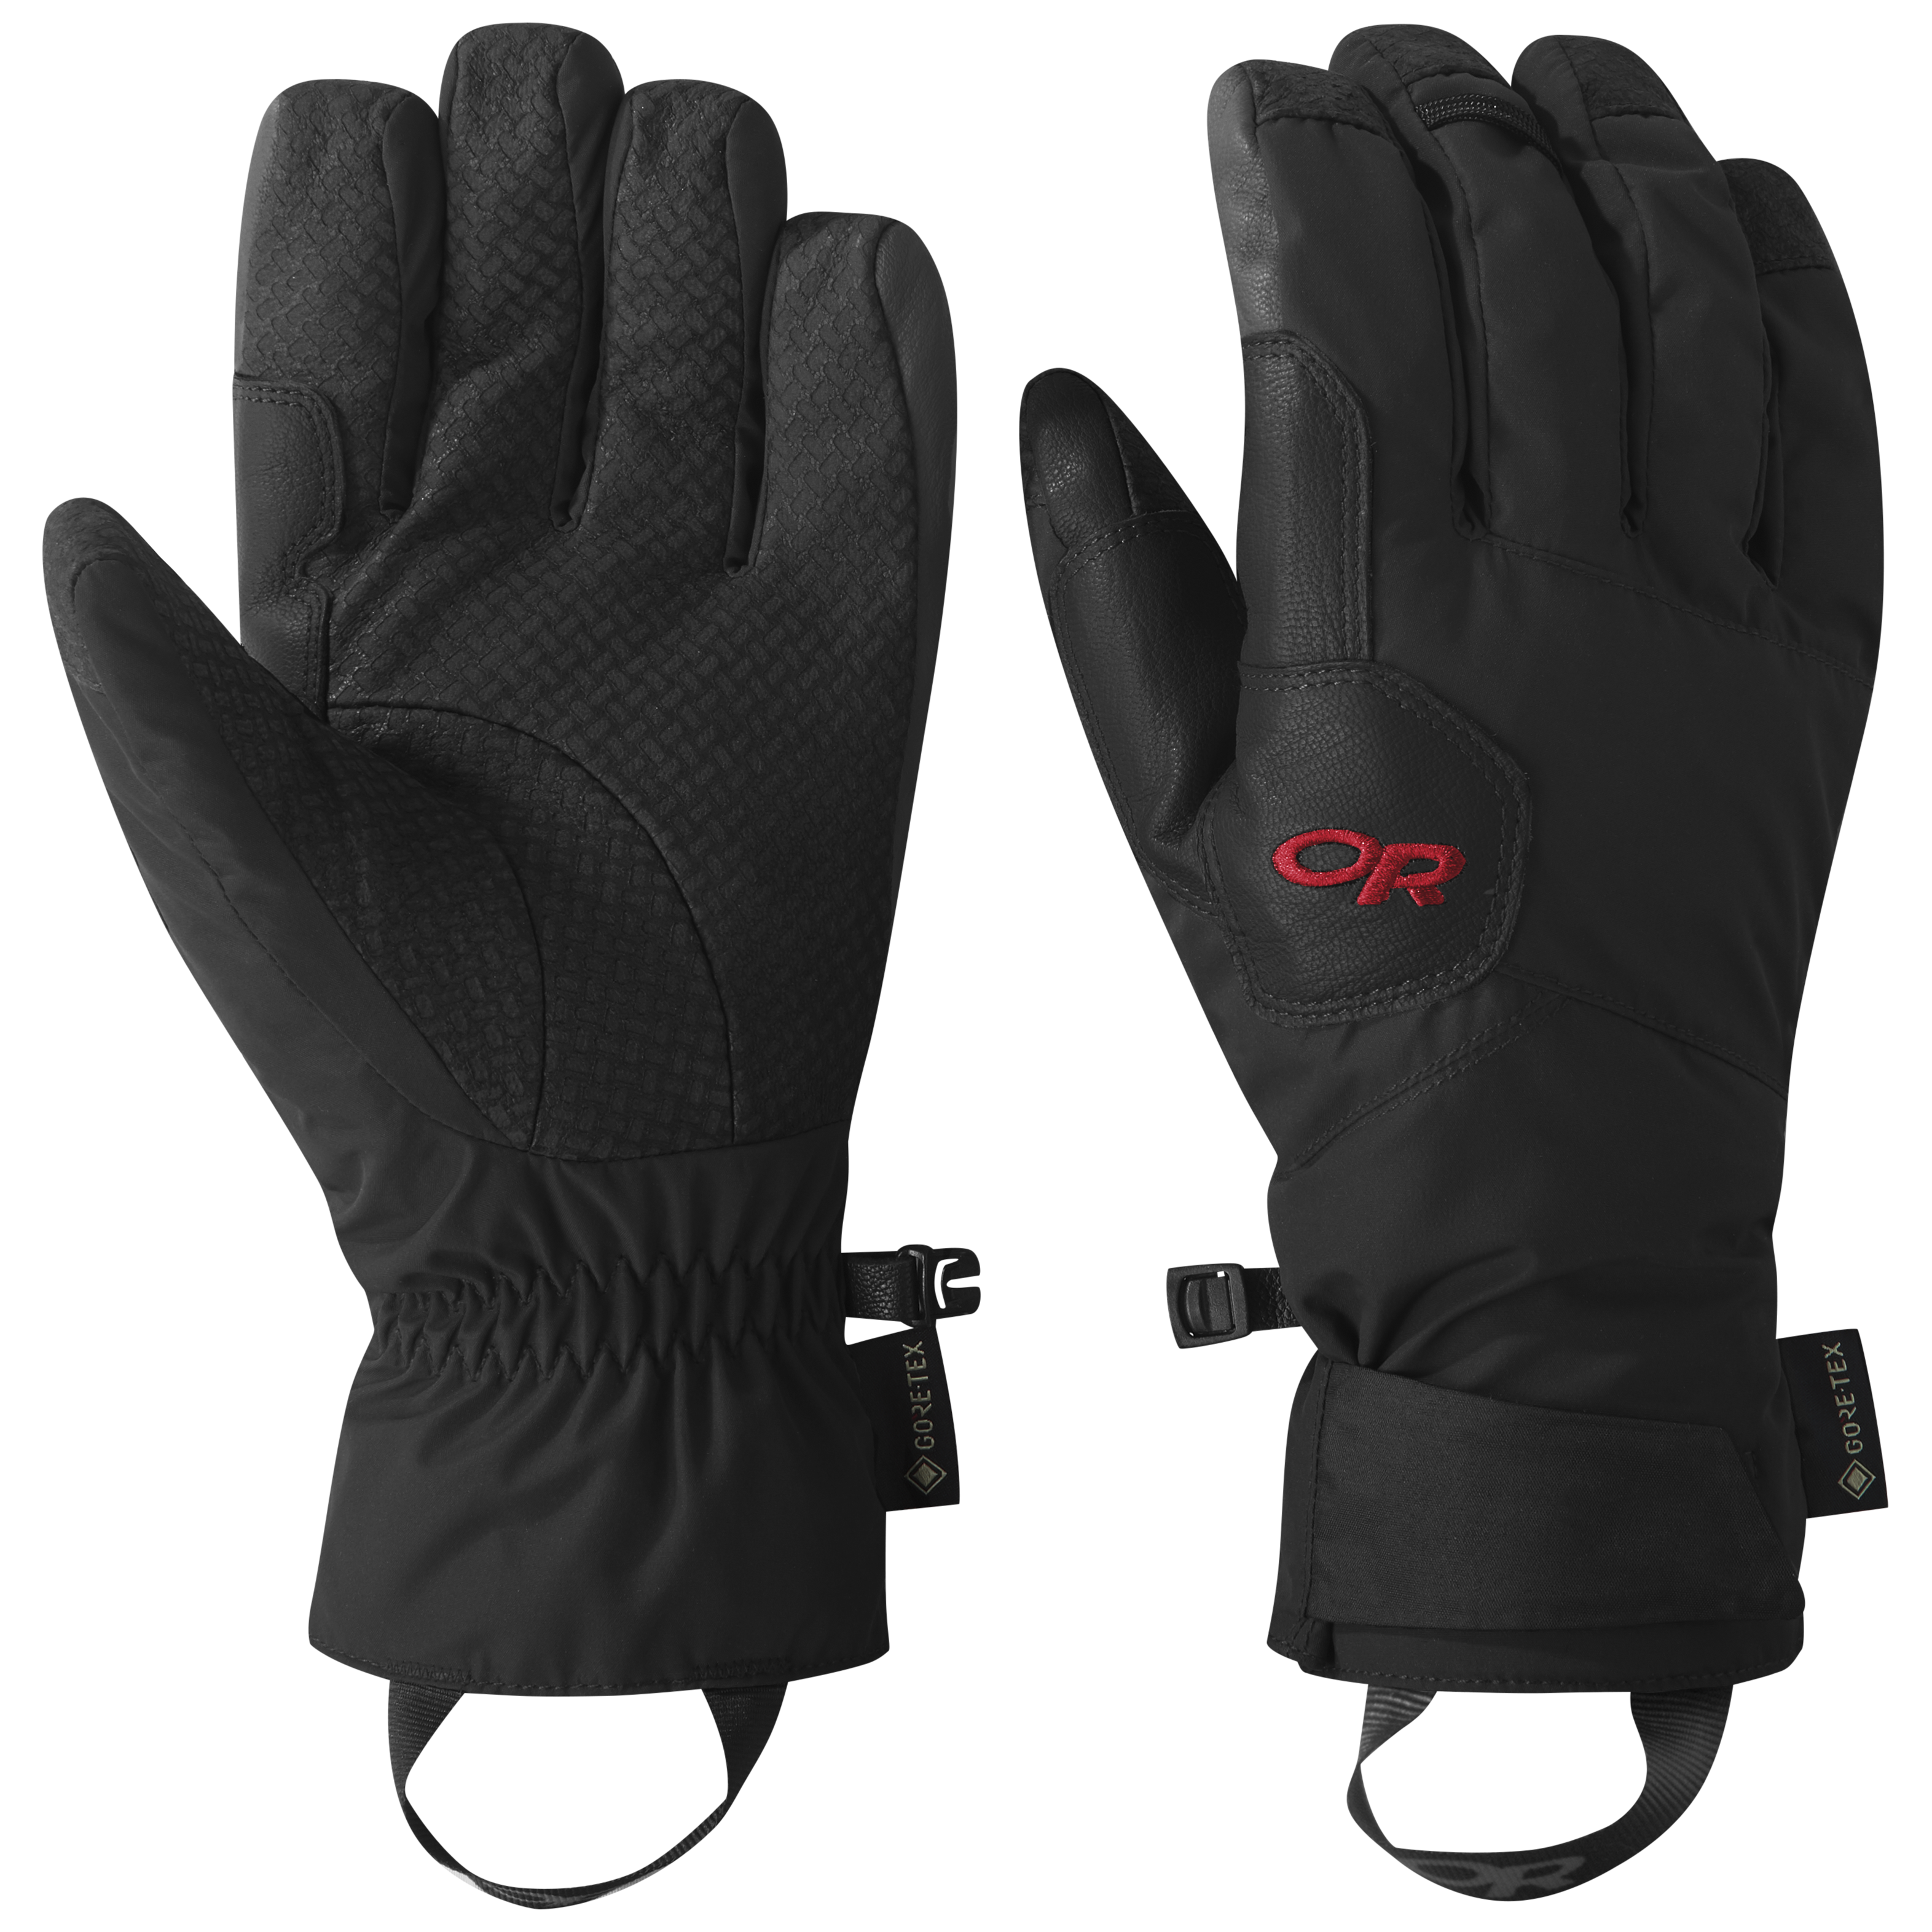 Ultimate Waterproof & Windproof Thermal Gloves – Aorolle